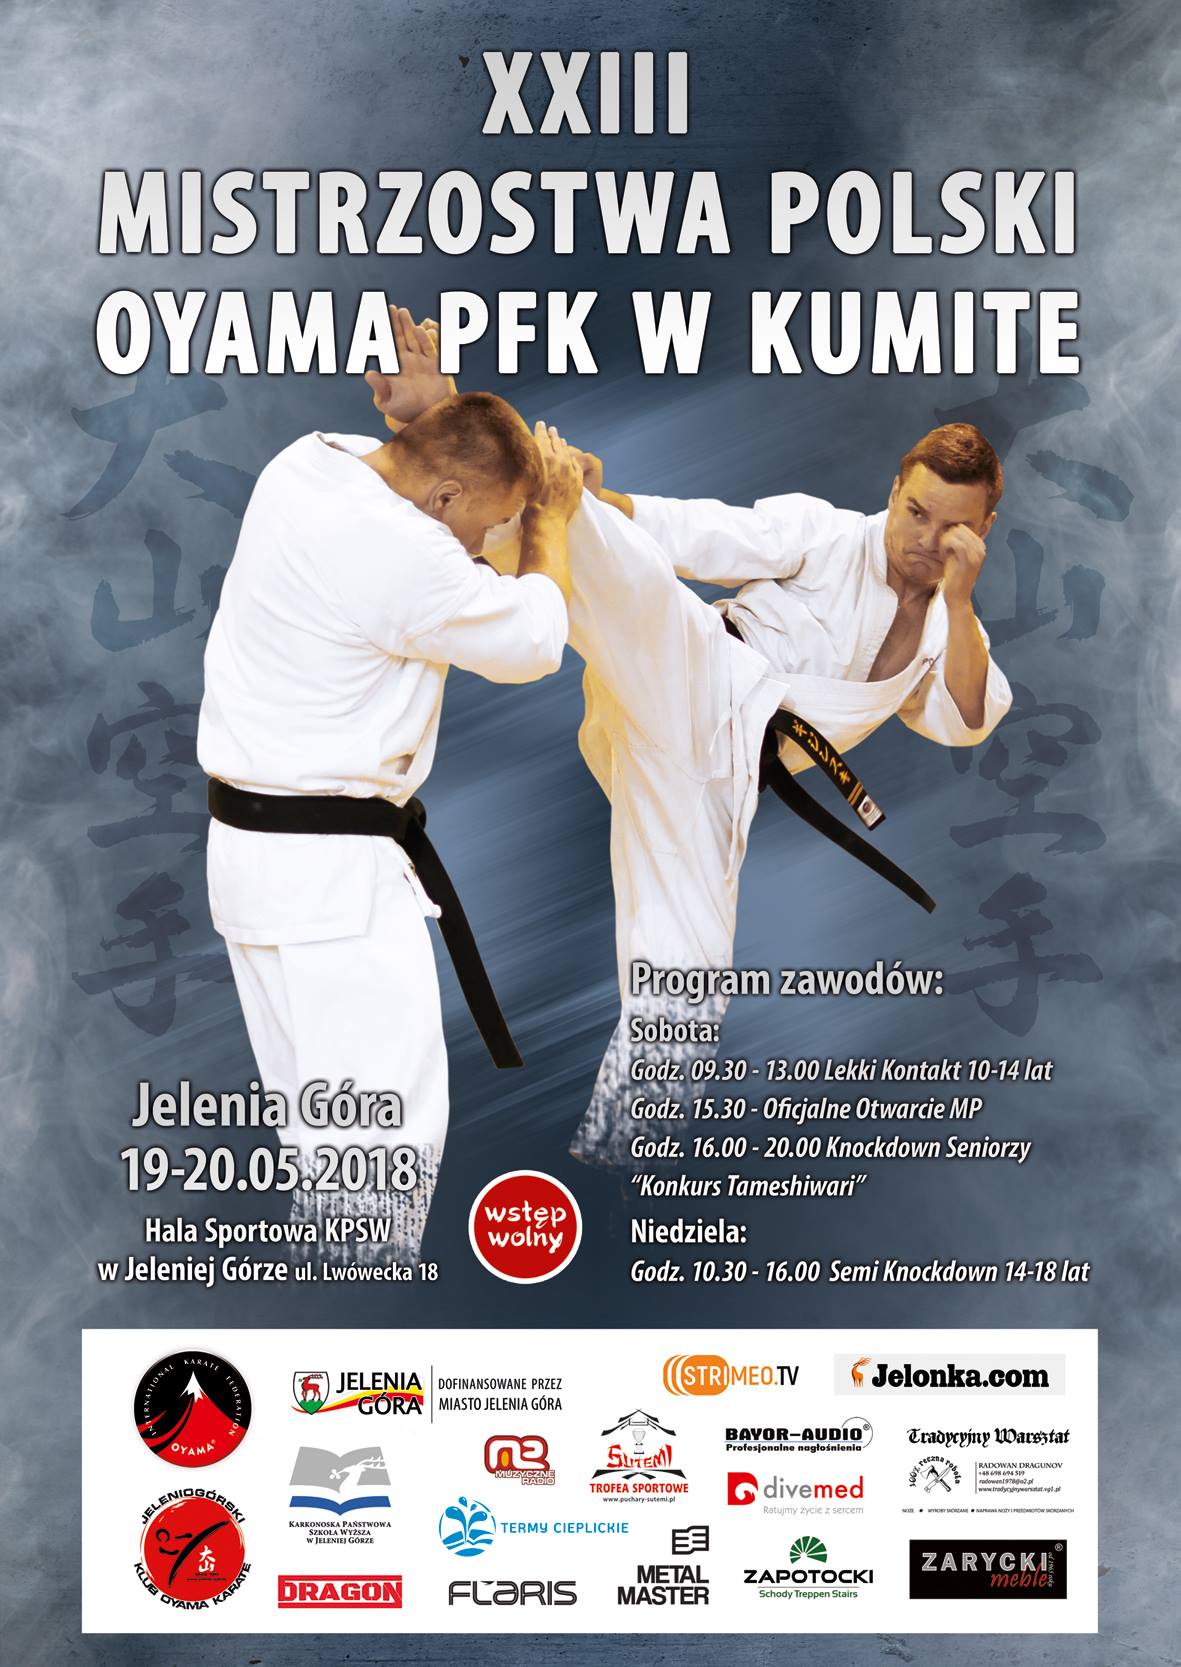 XXIII Mistrzostwa Polski OYAMA PFK w kumite